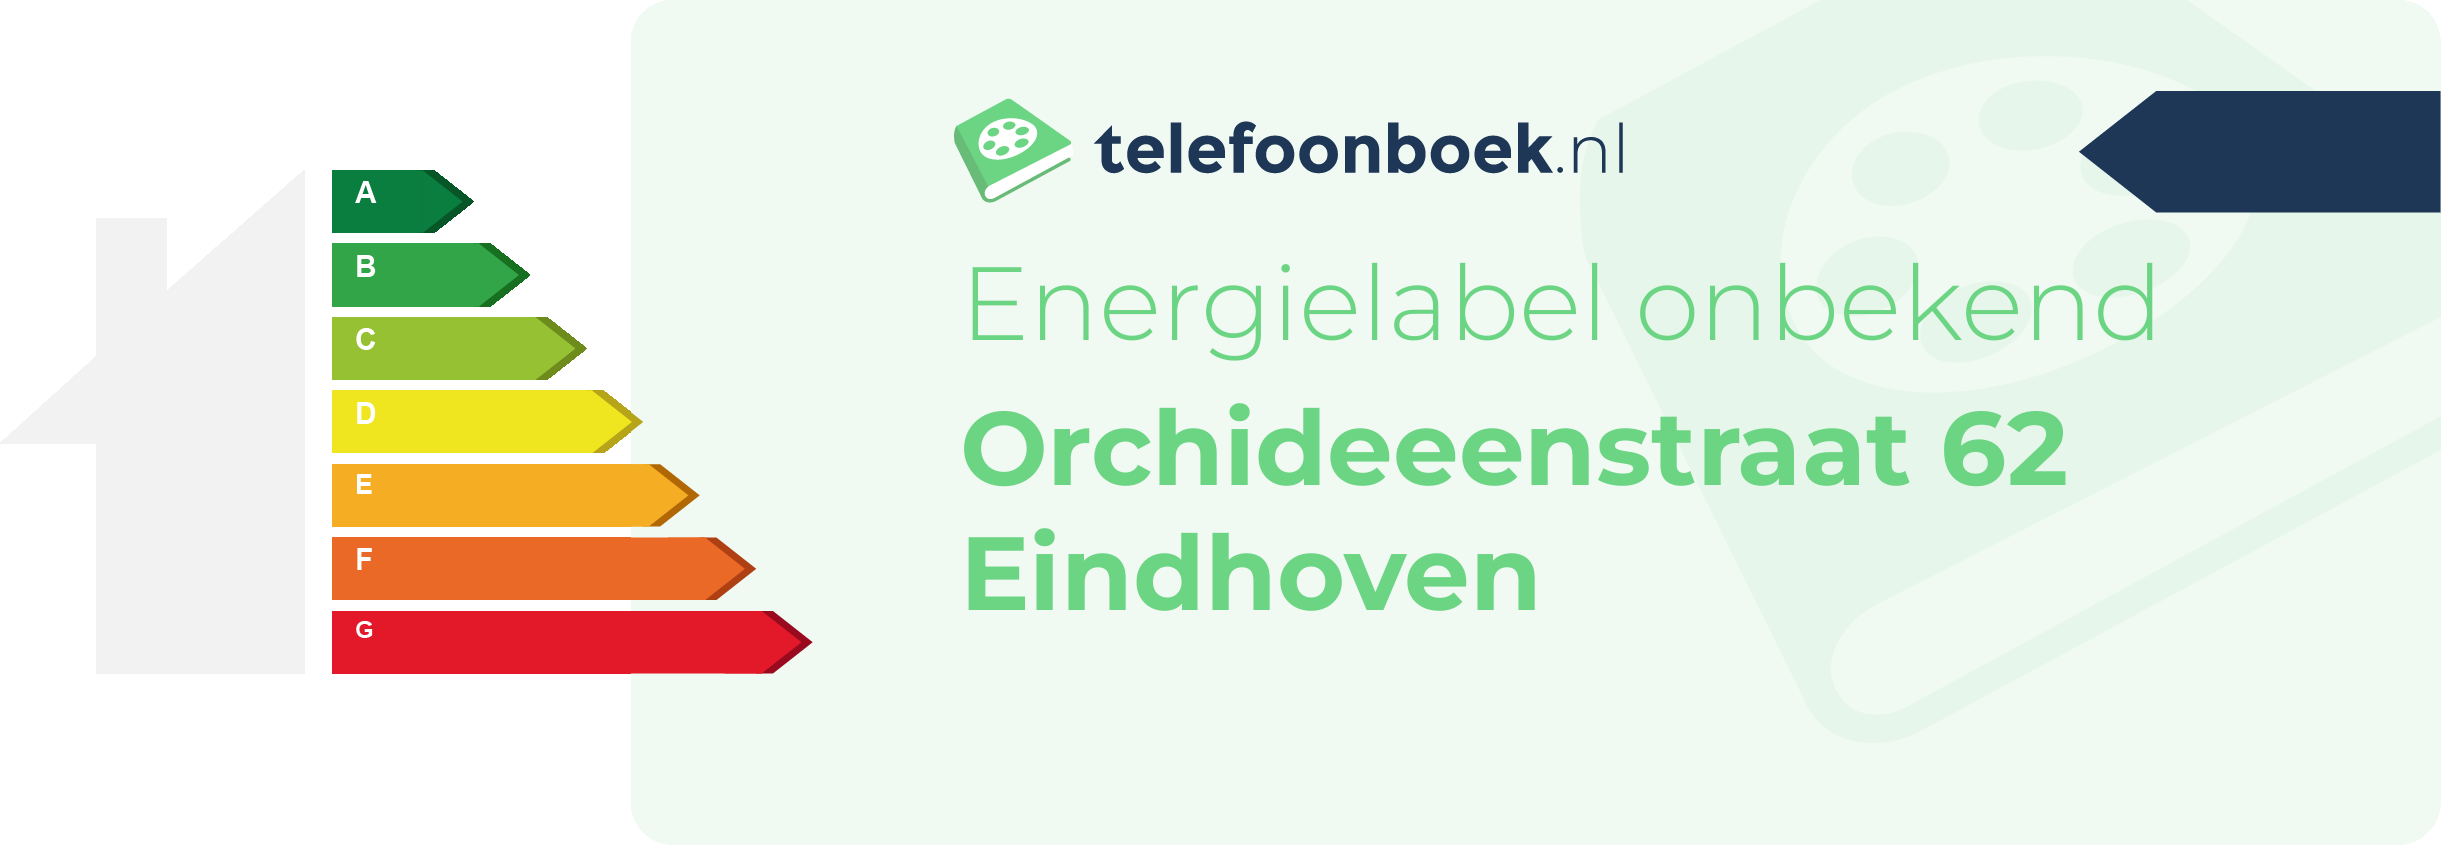 Energielabel Orchideeenstraat 62 Eindhoven